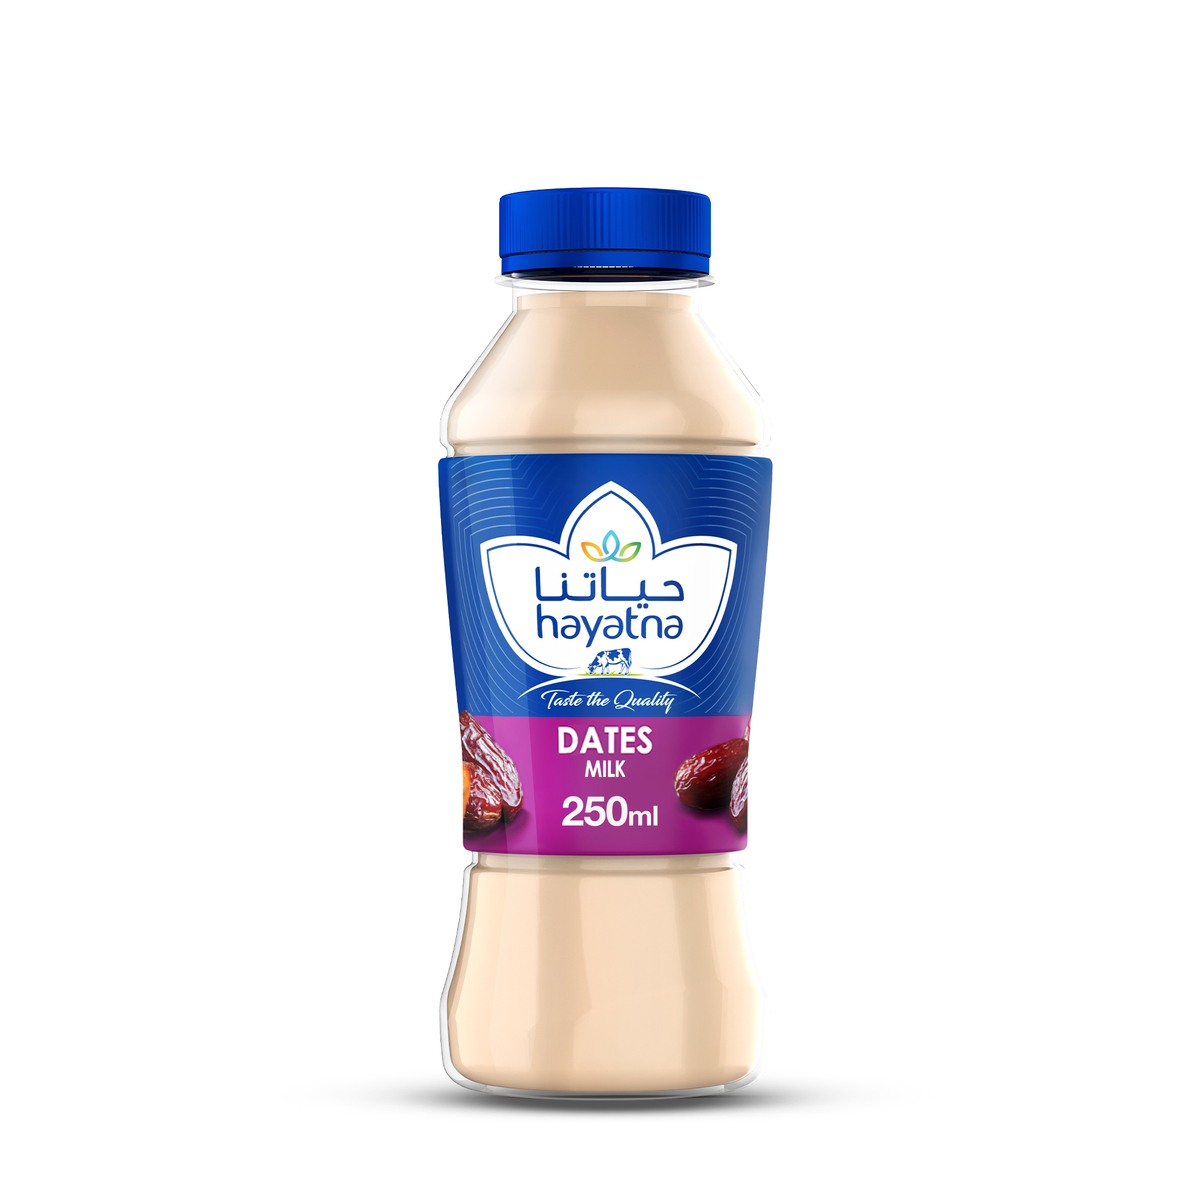 اشتري قم بشراء حياةنا حليب بنكهة التمر 250 مل Online at Best Price من الموقع - من لولو هايبر ماركت Flavoured Milk في الامارات